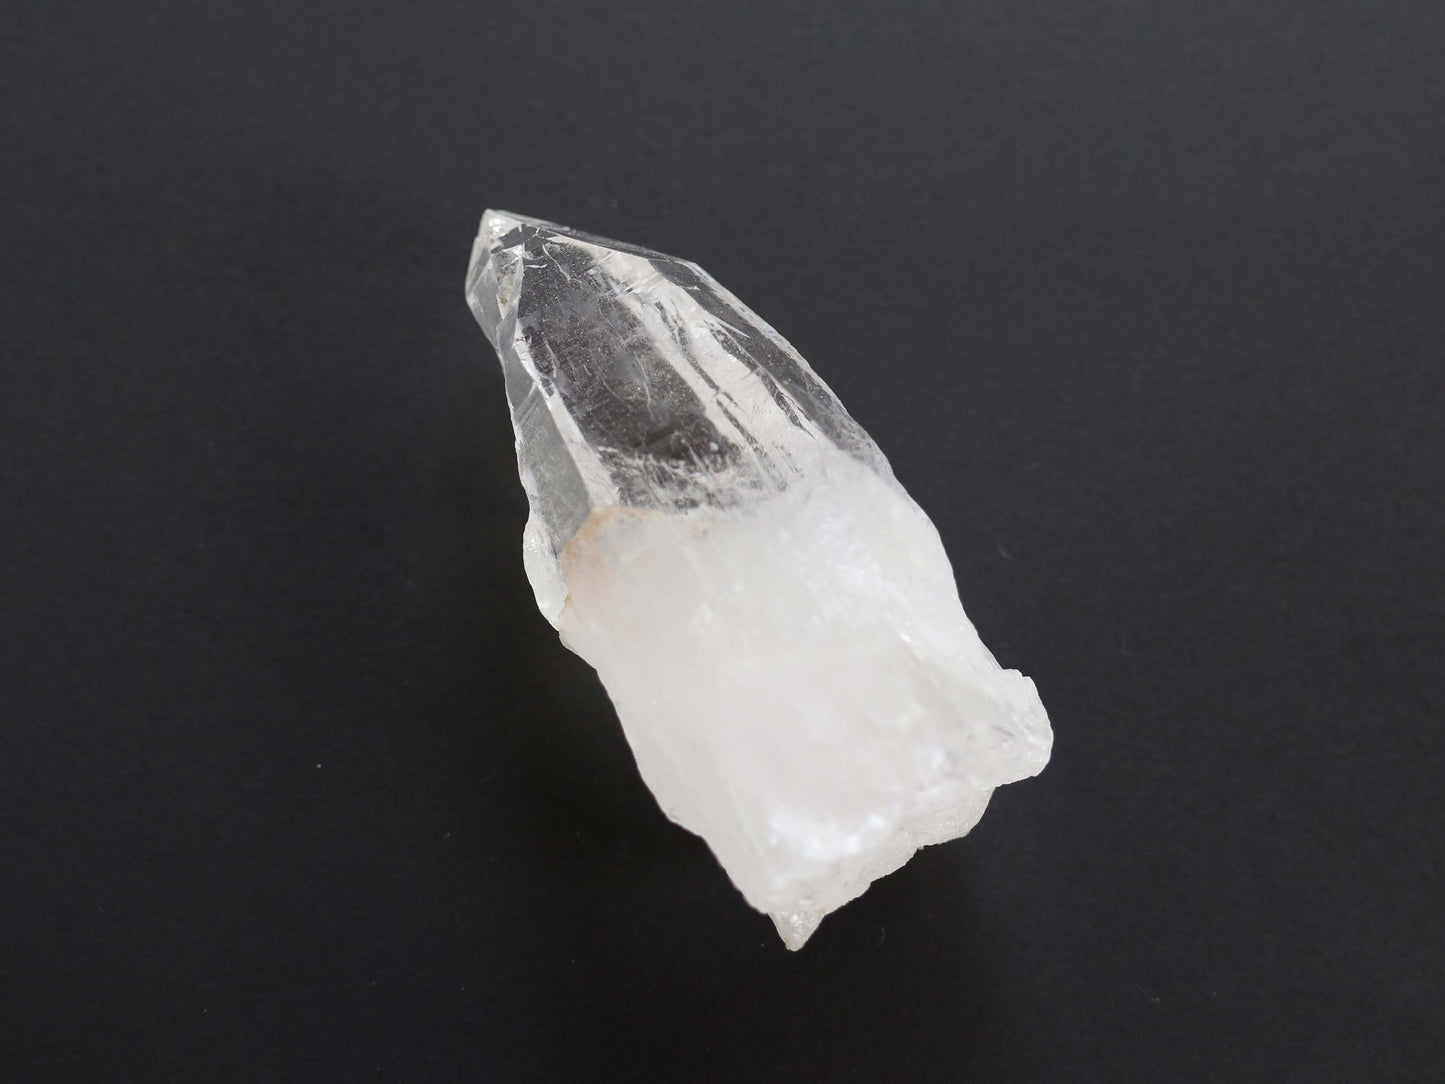 ガネーシュヒマール産ヒマラヤ水晶イシス、クリアクリスタルPN:GG-65